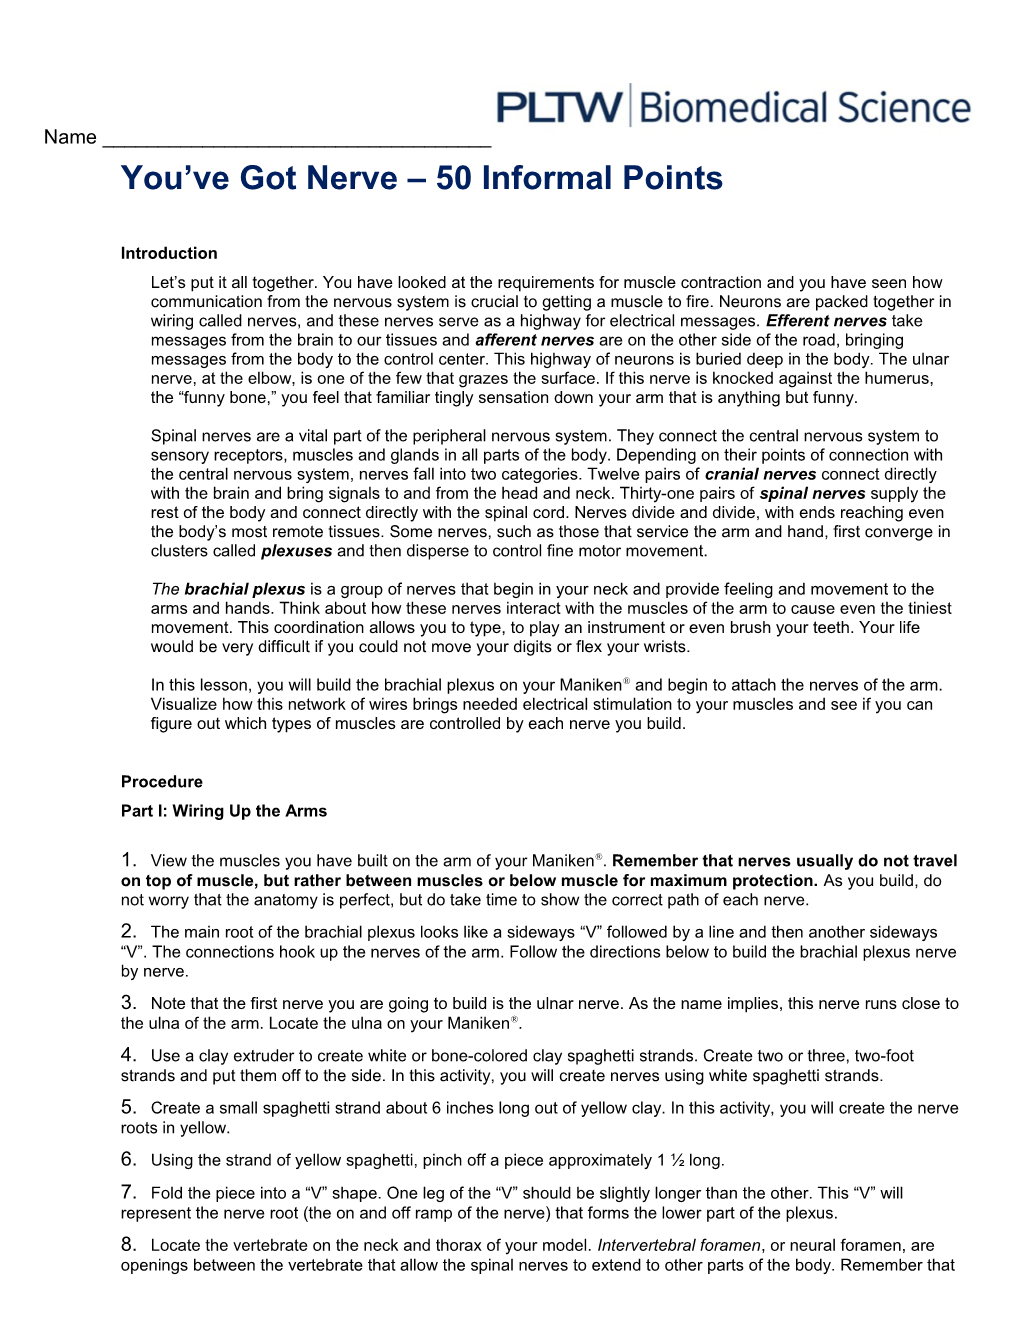 You Ve Got Nerve 50 Informal Points